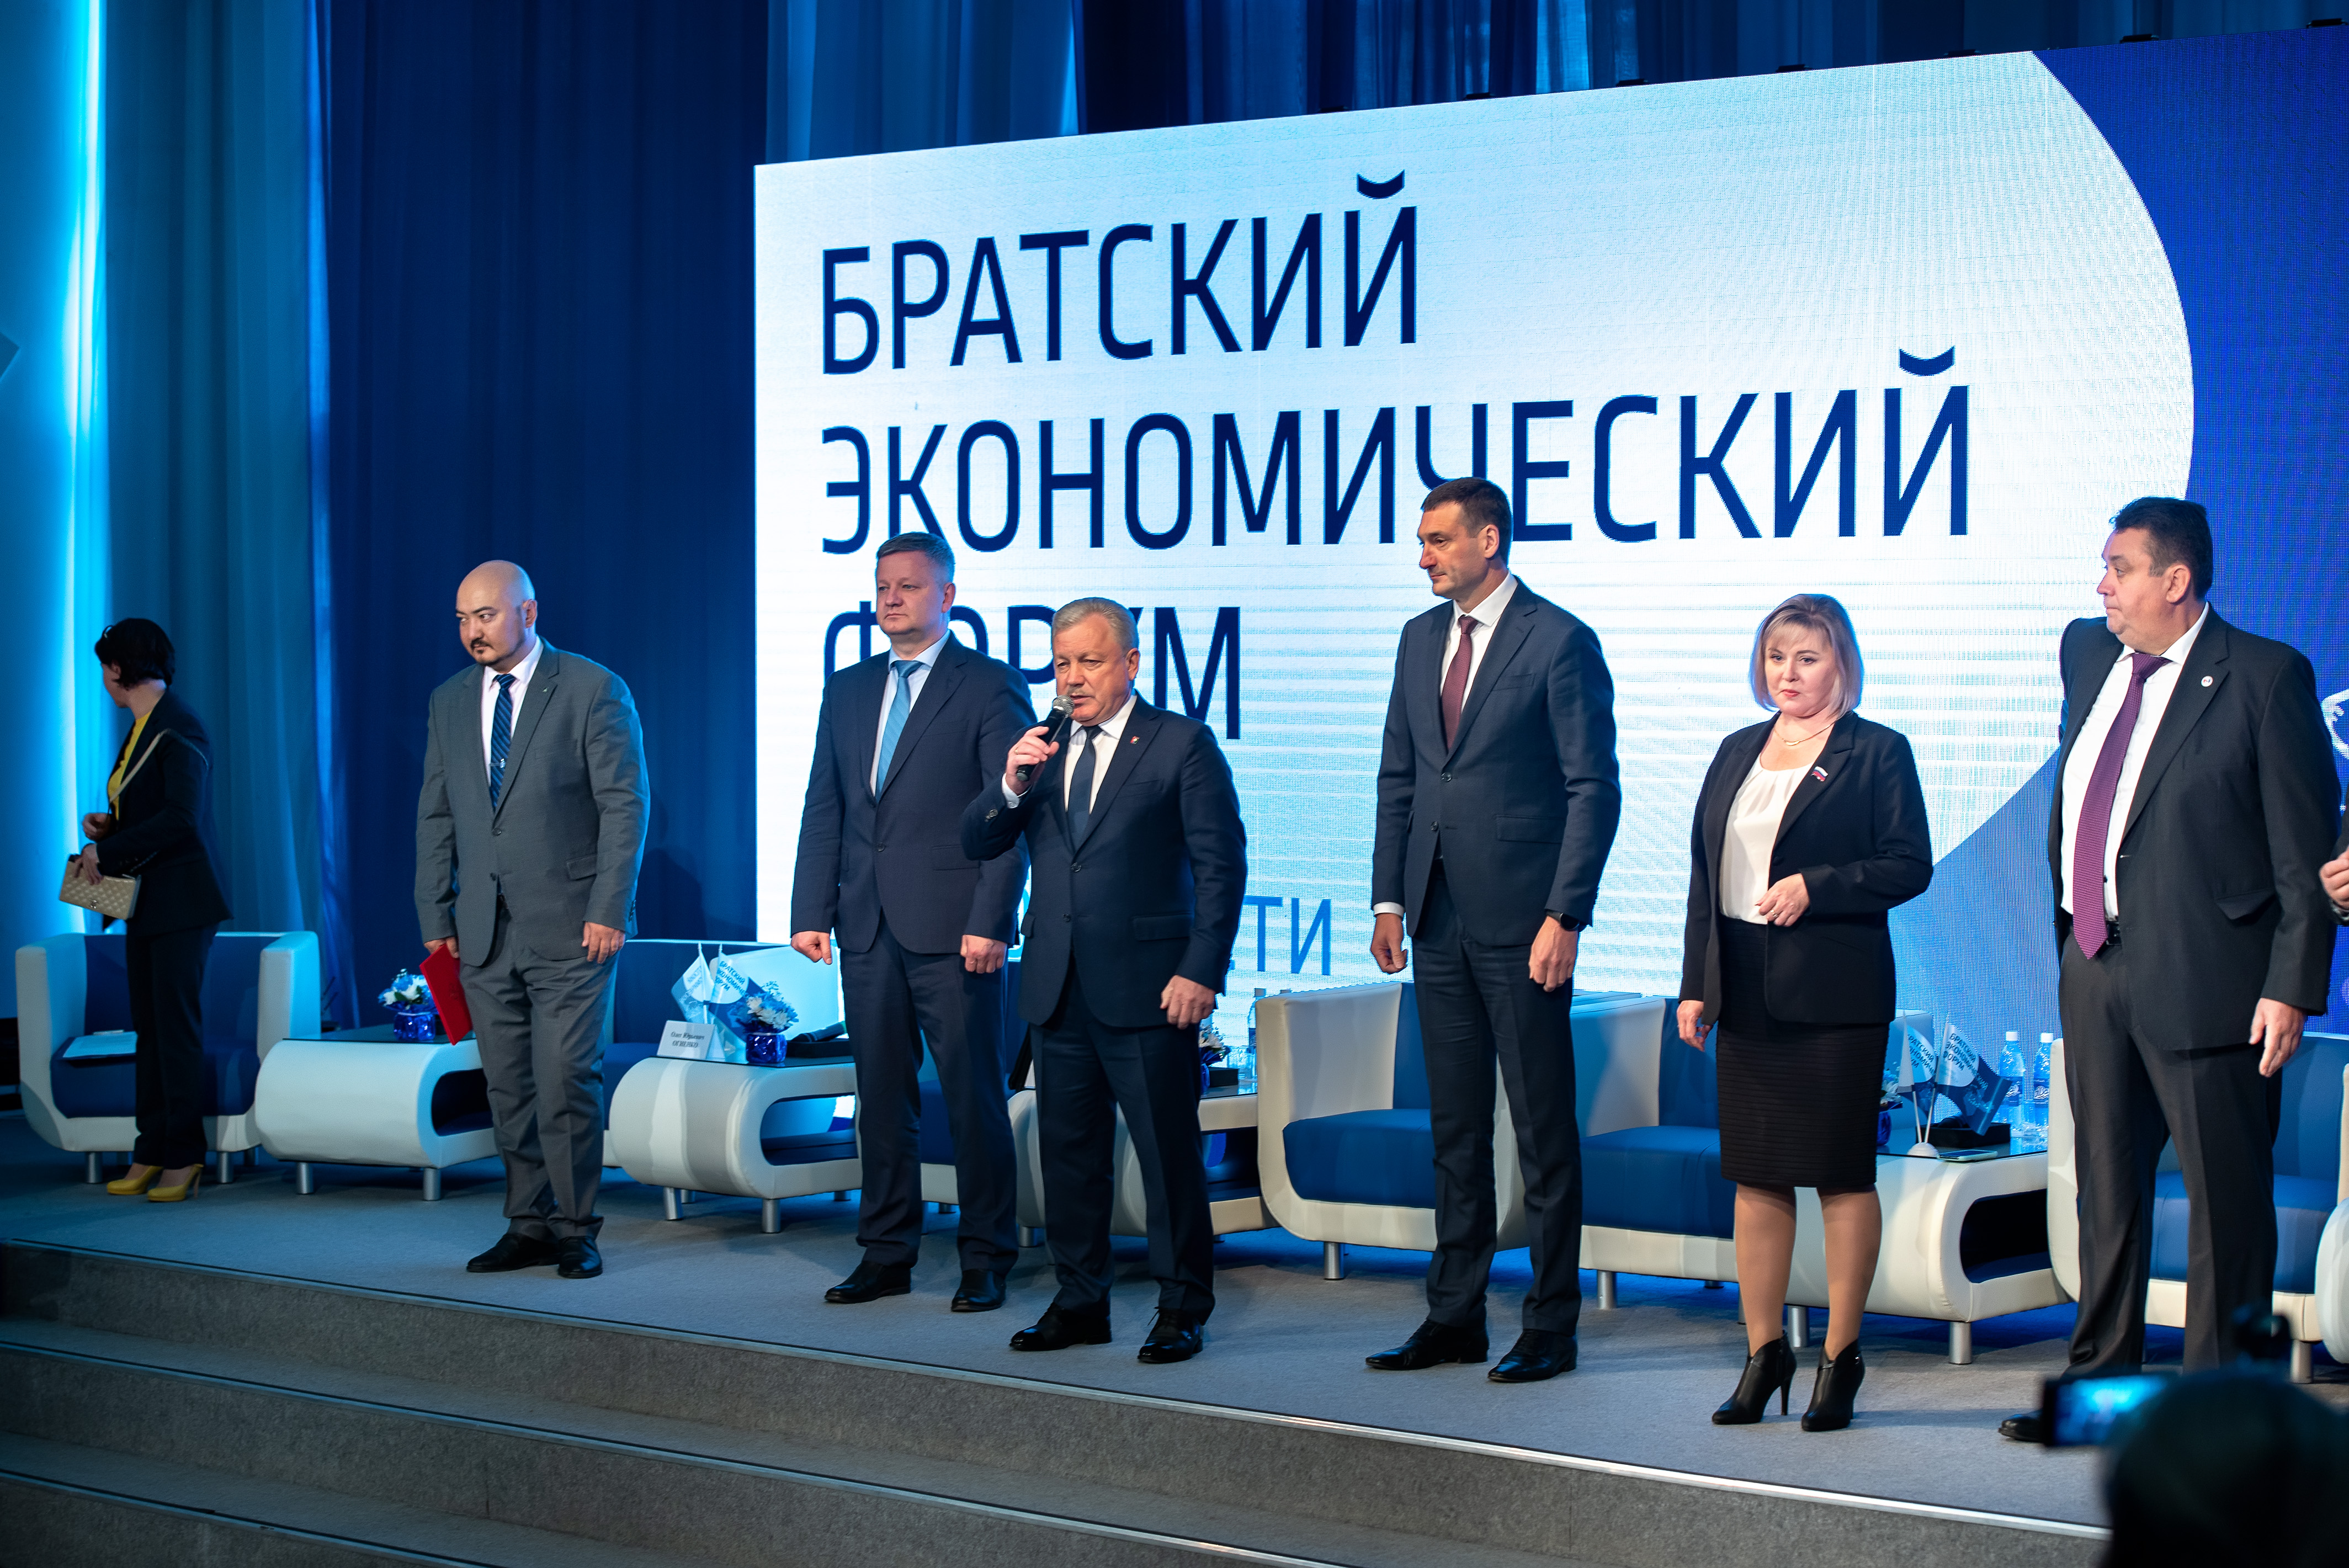  Группа «Илим» выступила генеральным партнером V Братского экономического форума 